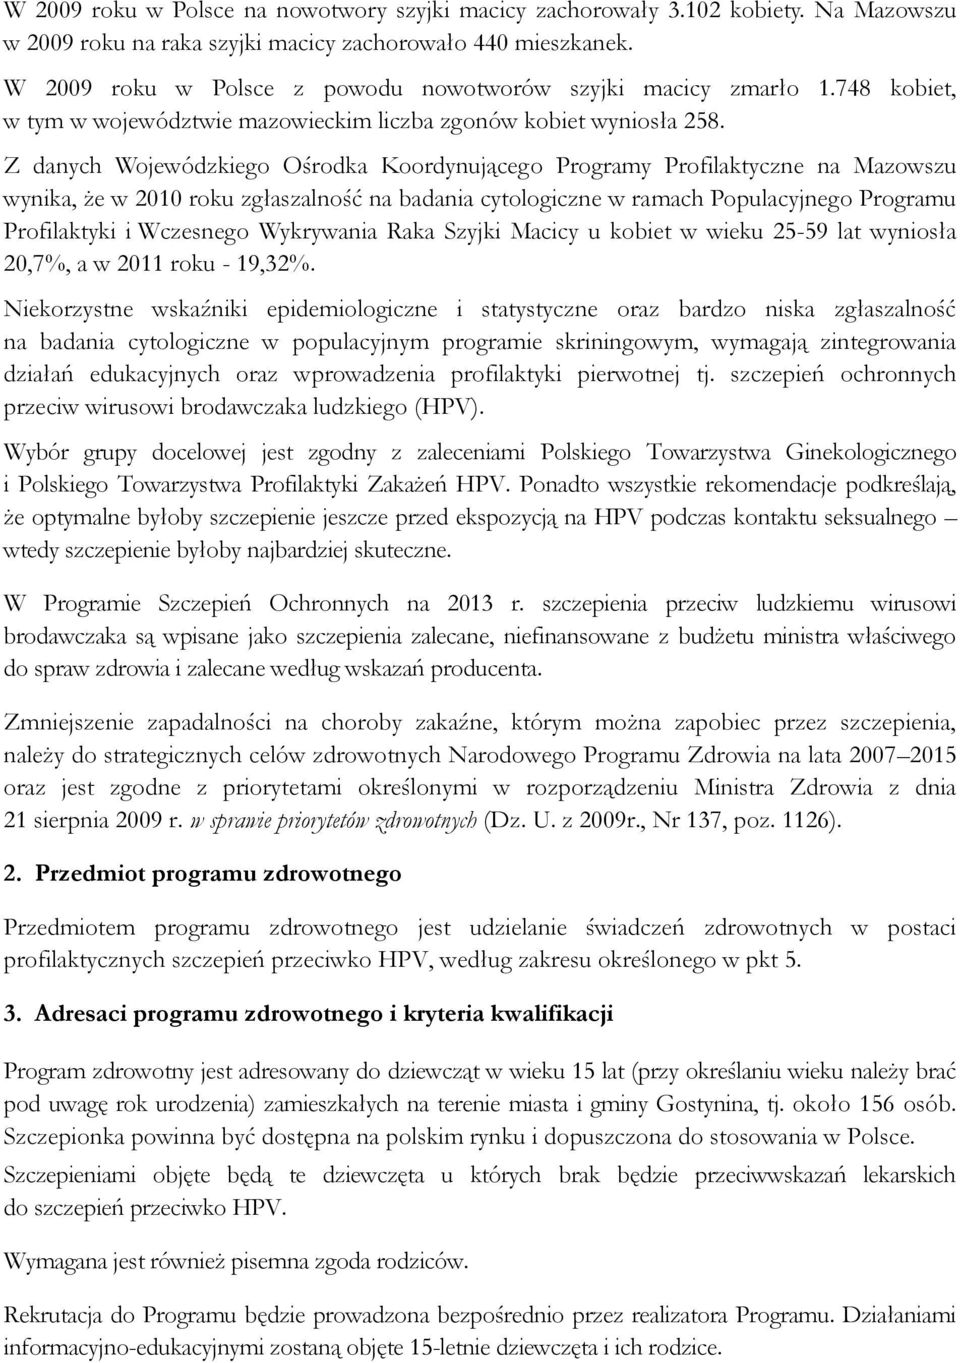 Z danych Wojewódzkiego Ośrodka Koordynującego Programy Profilaktyczne na Mazowszu wynika, że w 2010 roku zgłaszalność na badania cytologiczne w ramach Populacyjnego Programu Profilaktyki i Wczesnego